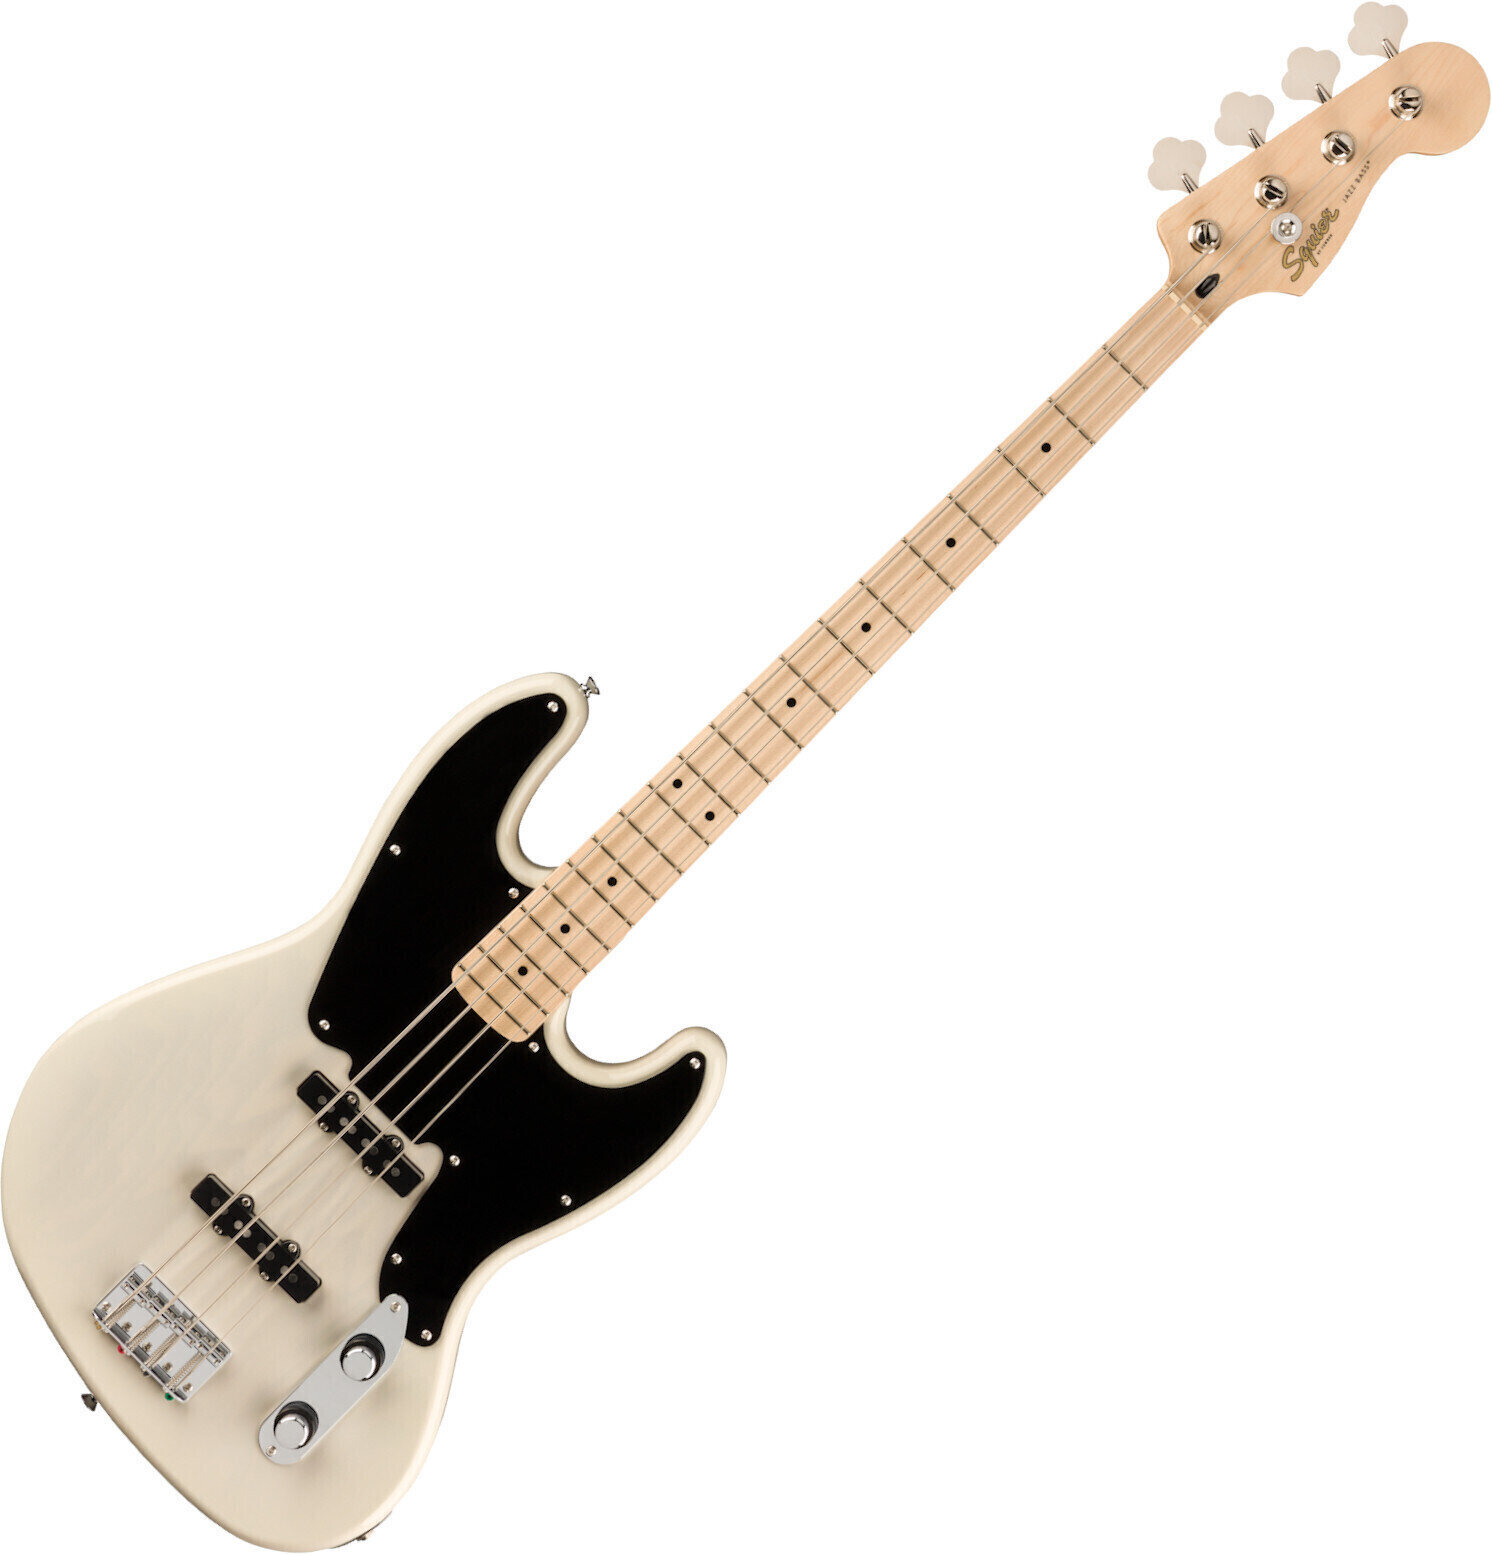 E-Bass Fender Squier Paranormal Jazz Bass '54 MN Butterscotch Blonde